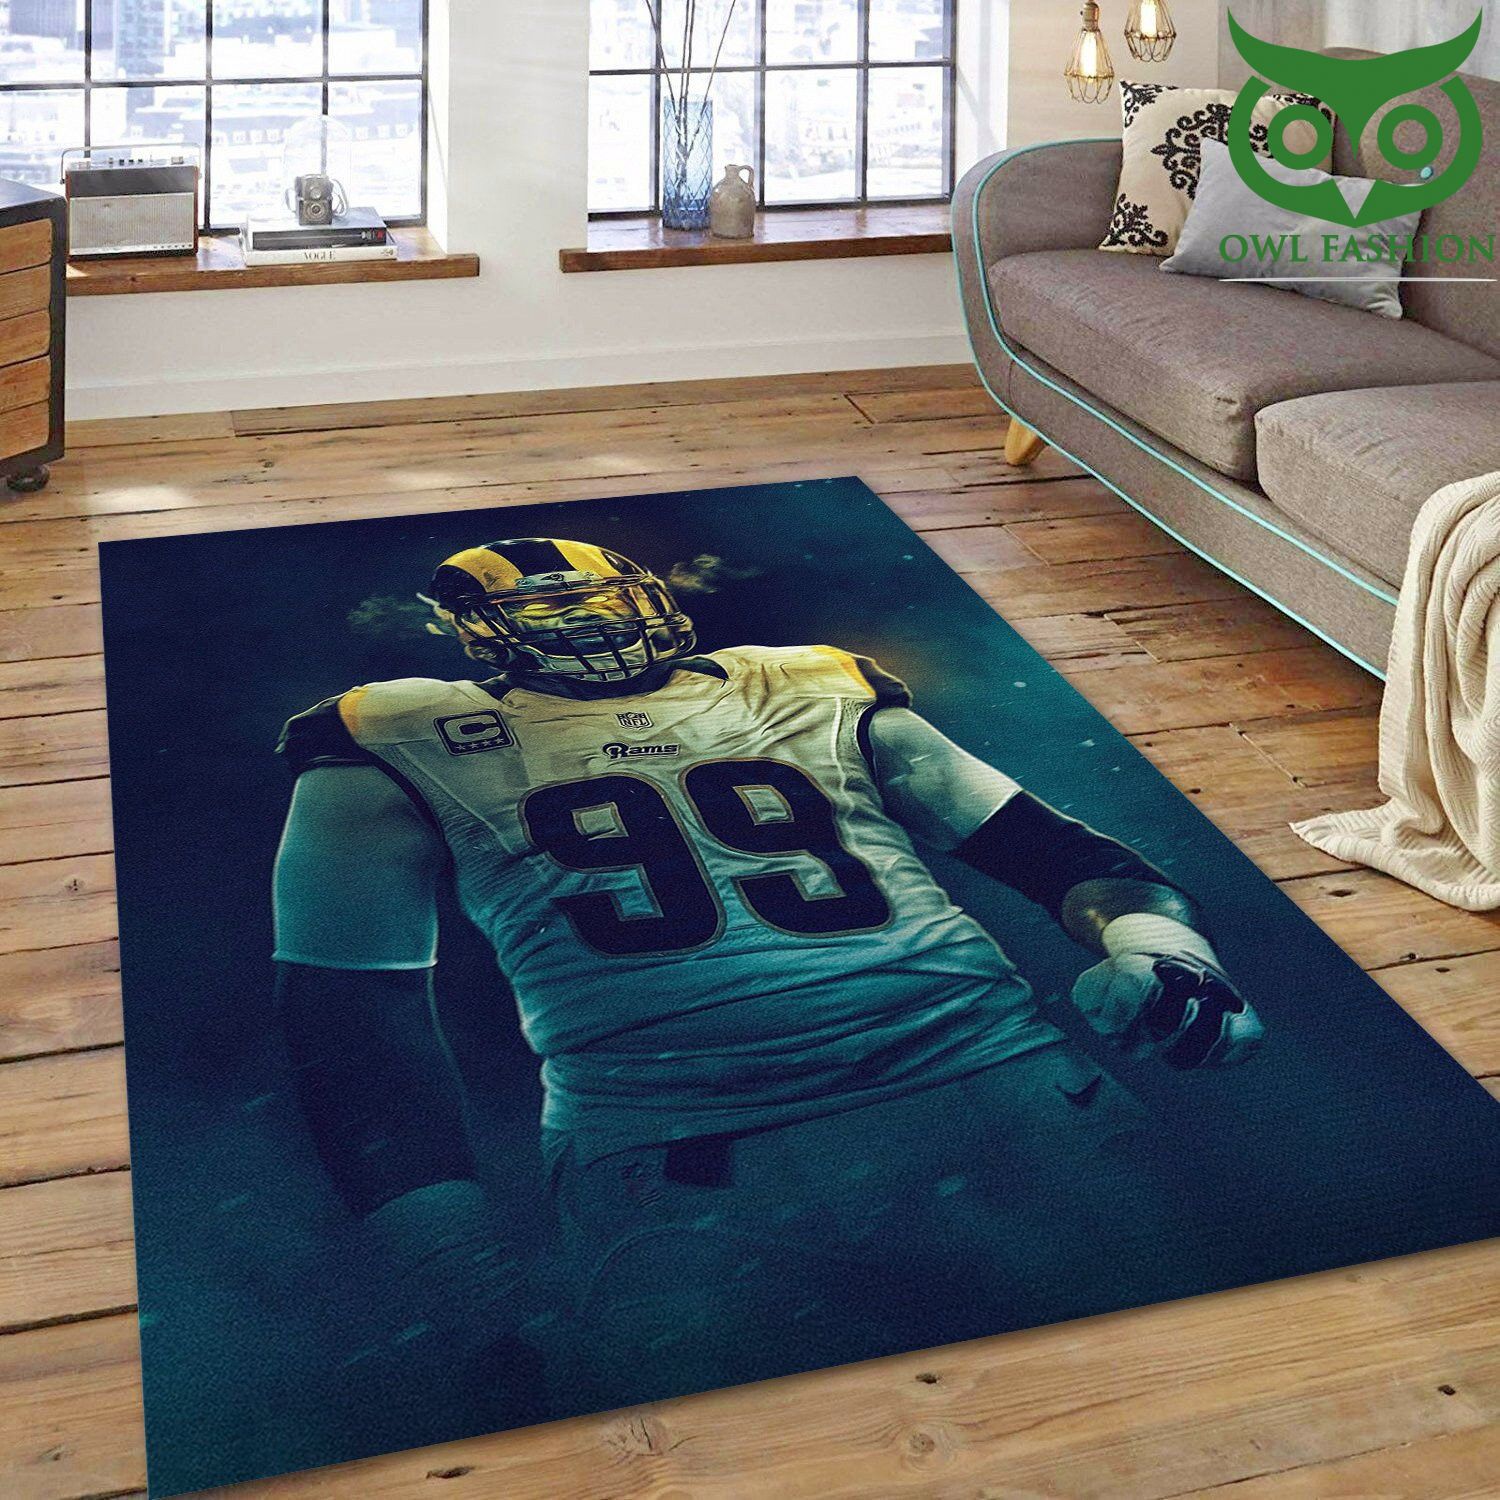 La Rams Aaron Donald 99 NFL house decoration carpet rug